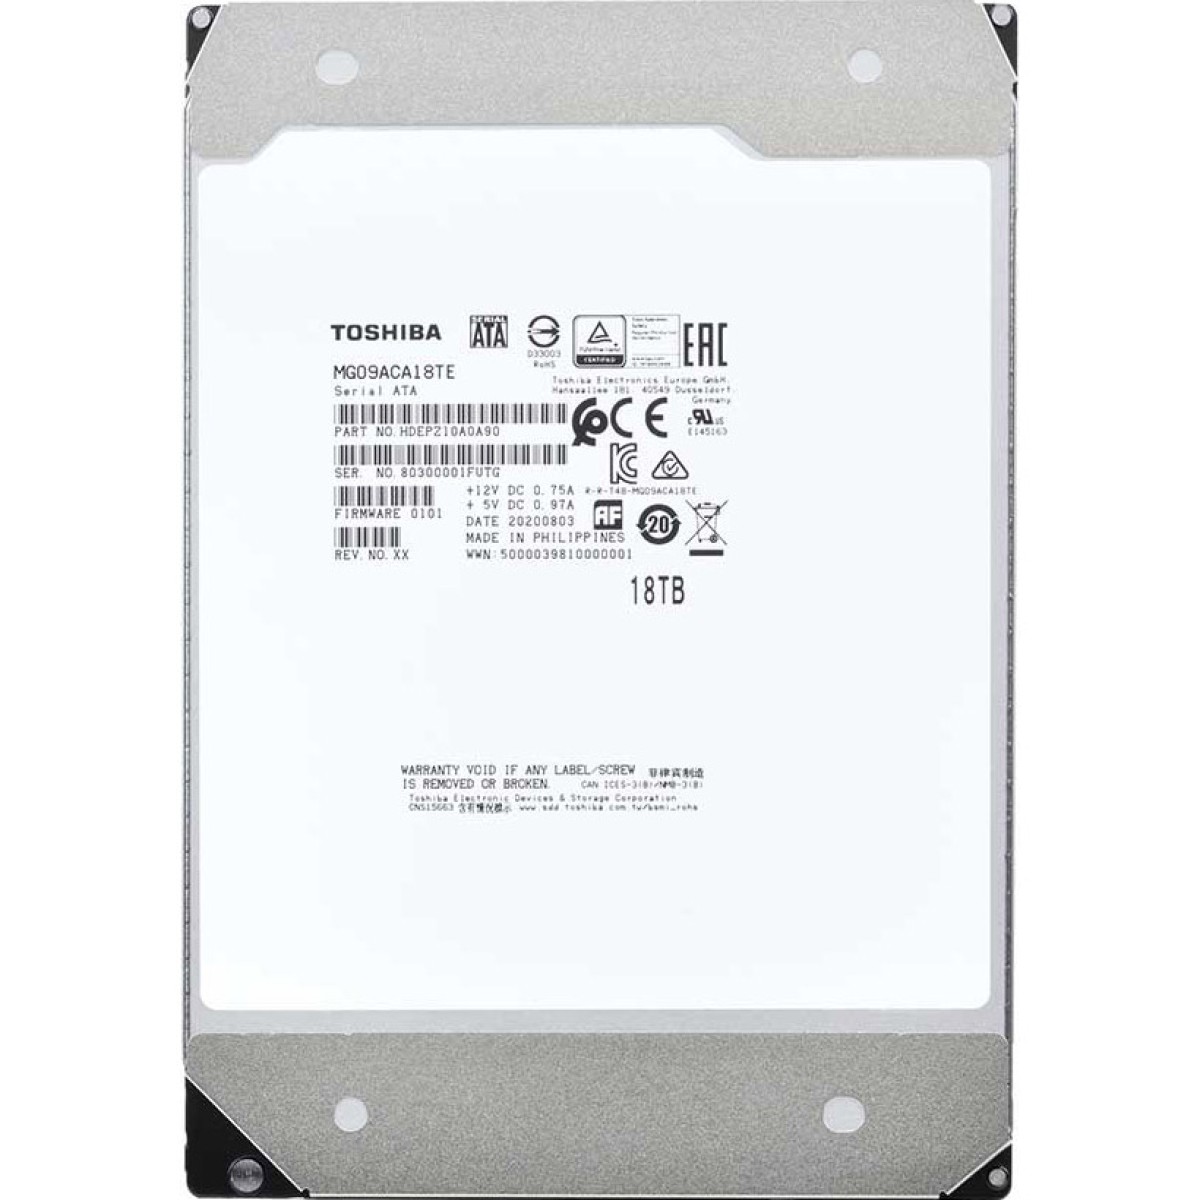 Жесткий диск Toshiba MG09 18 TB (MG09ACA18TE) 98_98.jpg - фото 2